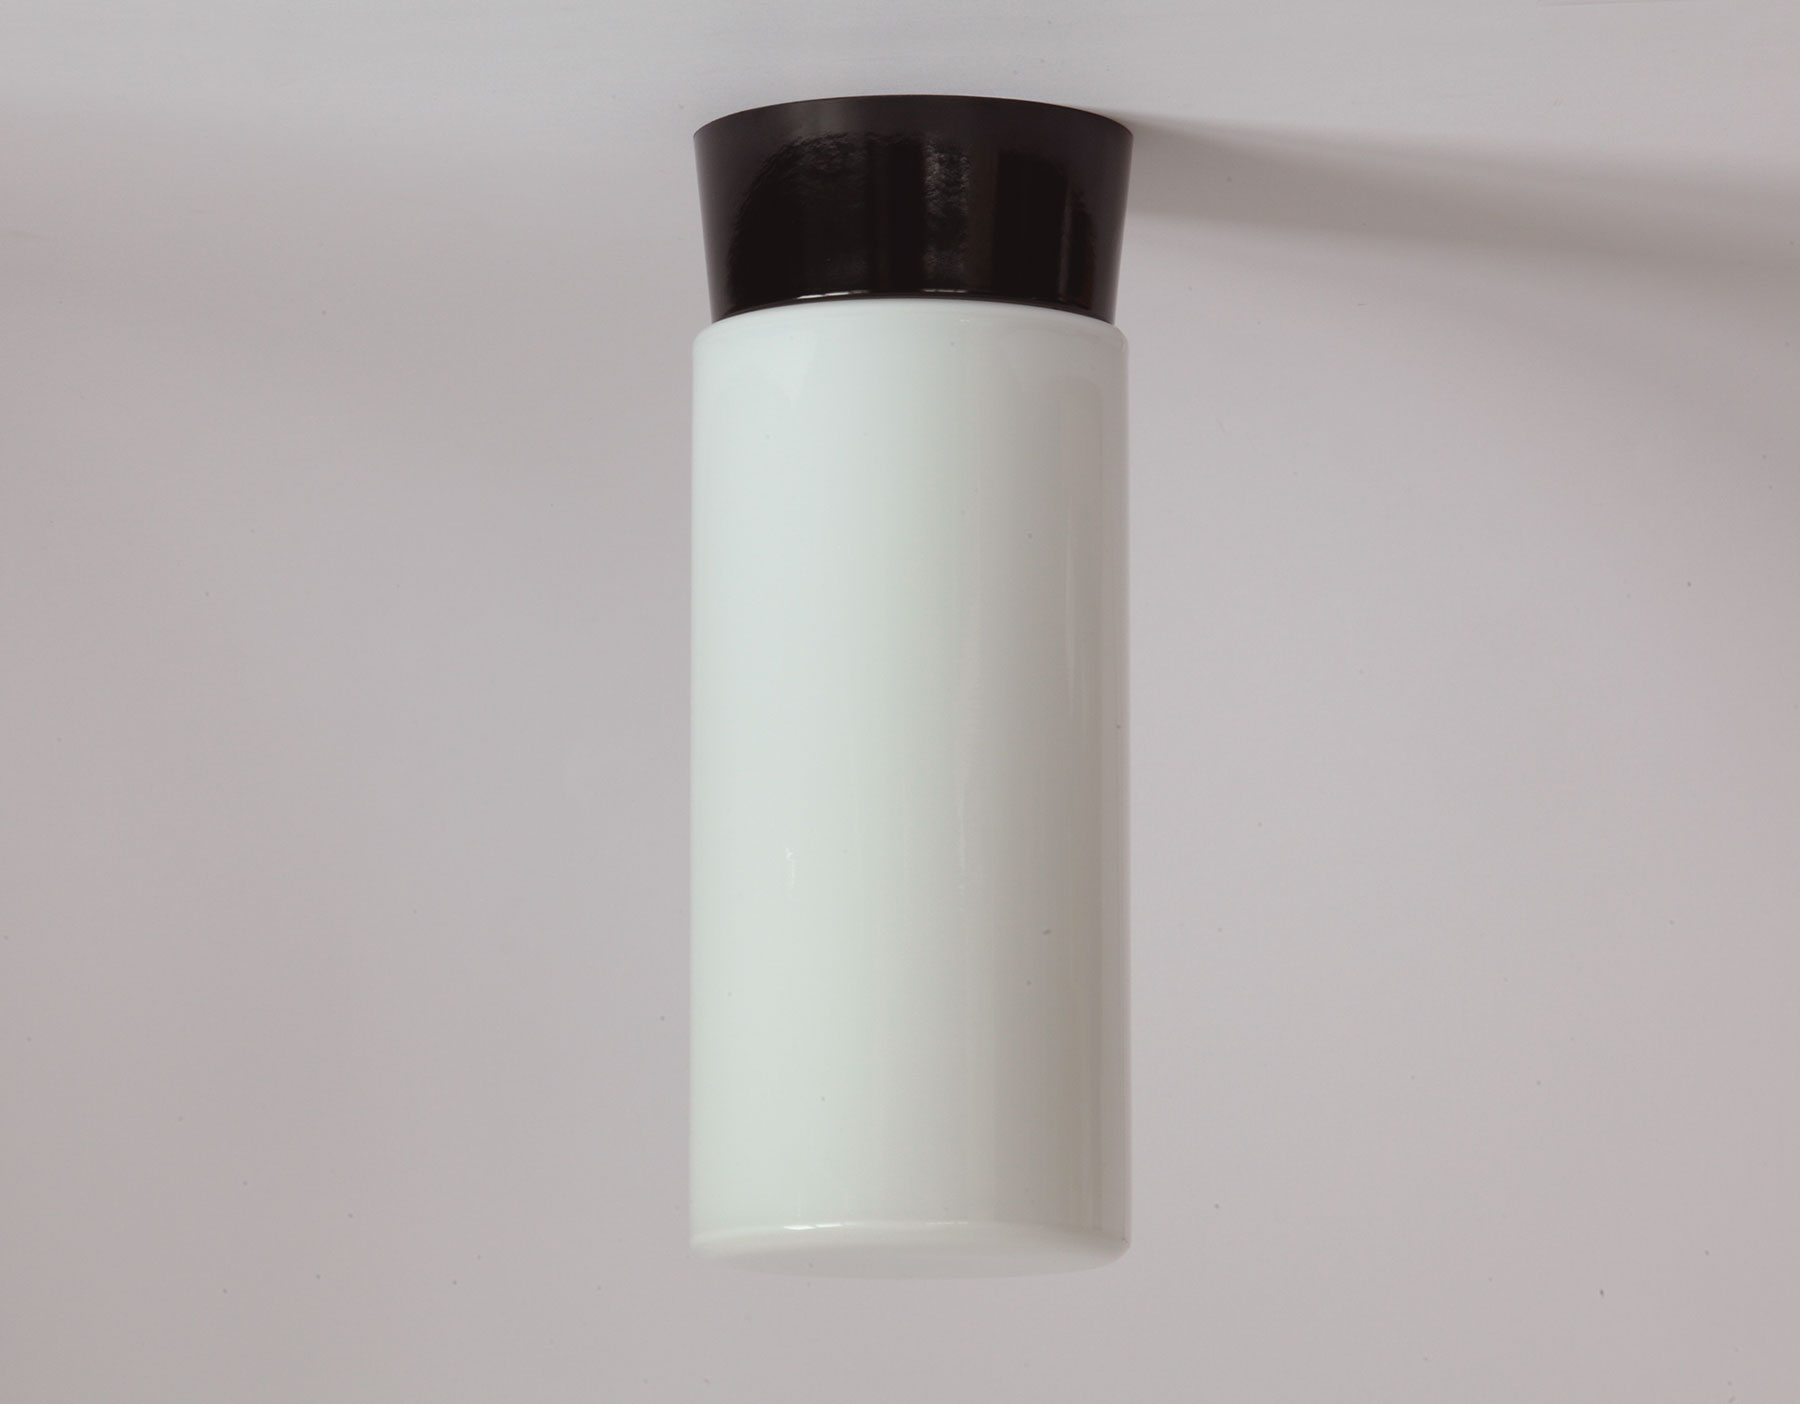 Zylinder-Deckenleuchte aus Opalglas mit Bakelit-Sockel: Puristische Formen und klassische Werkstoffe in schwarz und weiß